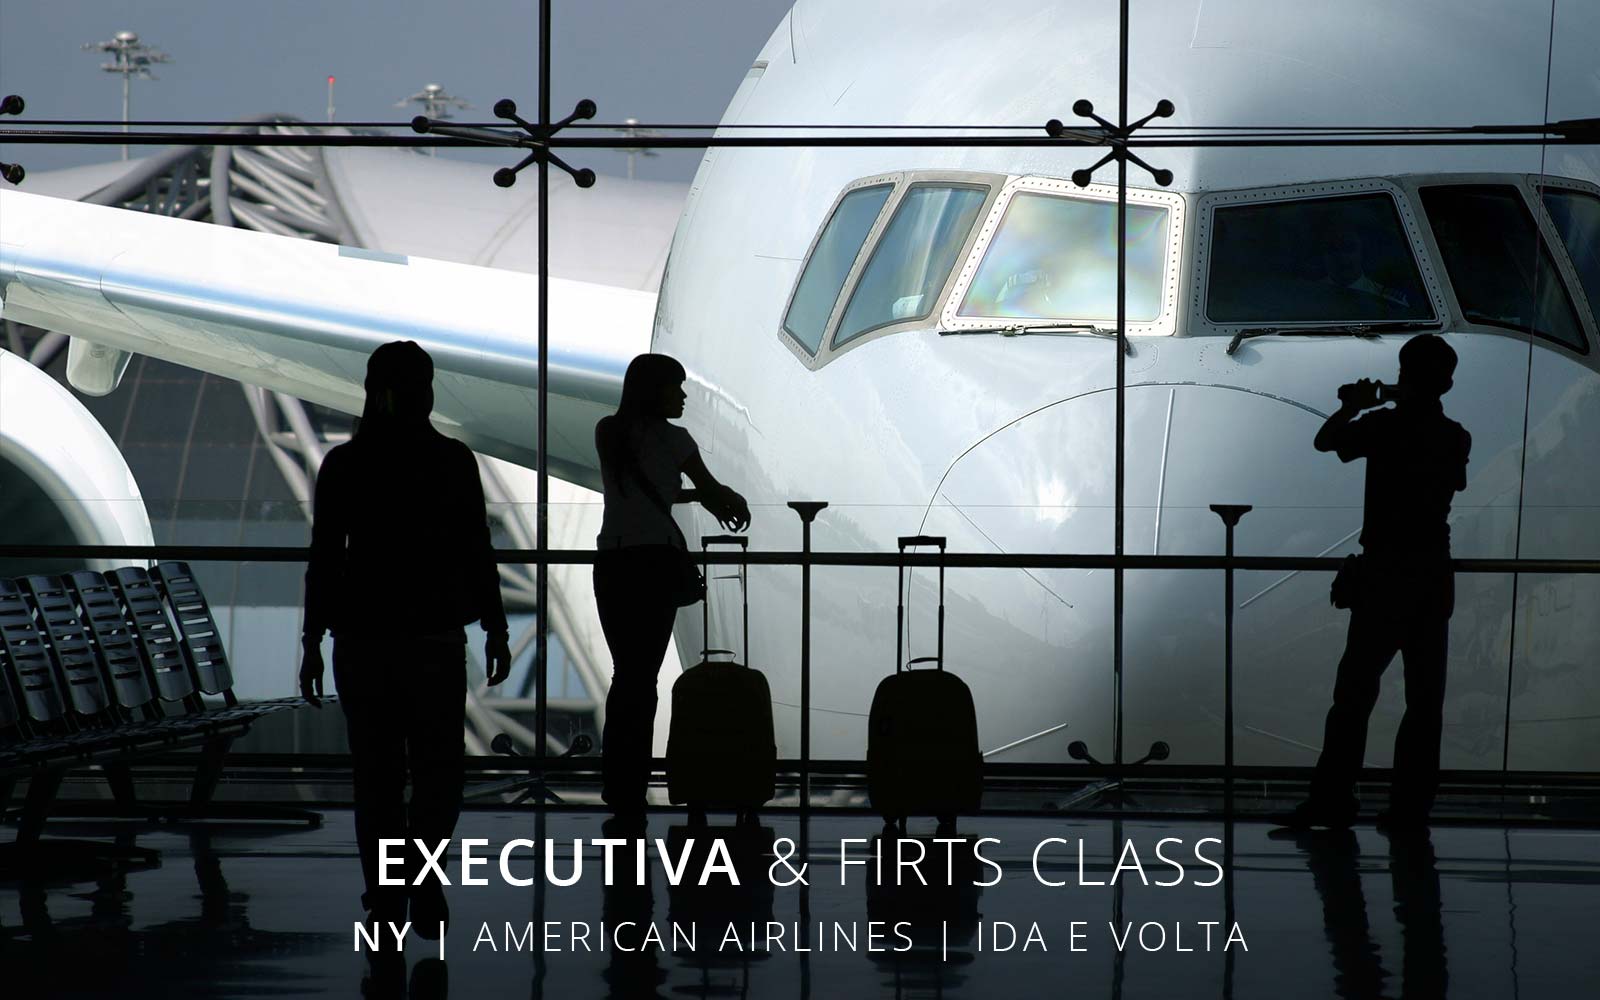 Passagem aérea Classe Executiva American Airlines de São Paulo para Nova York